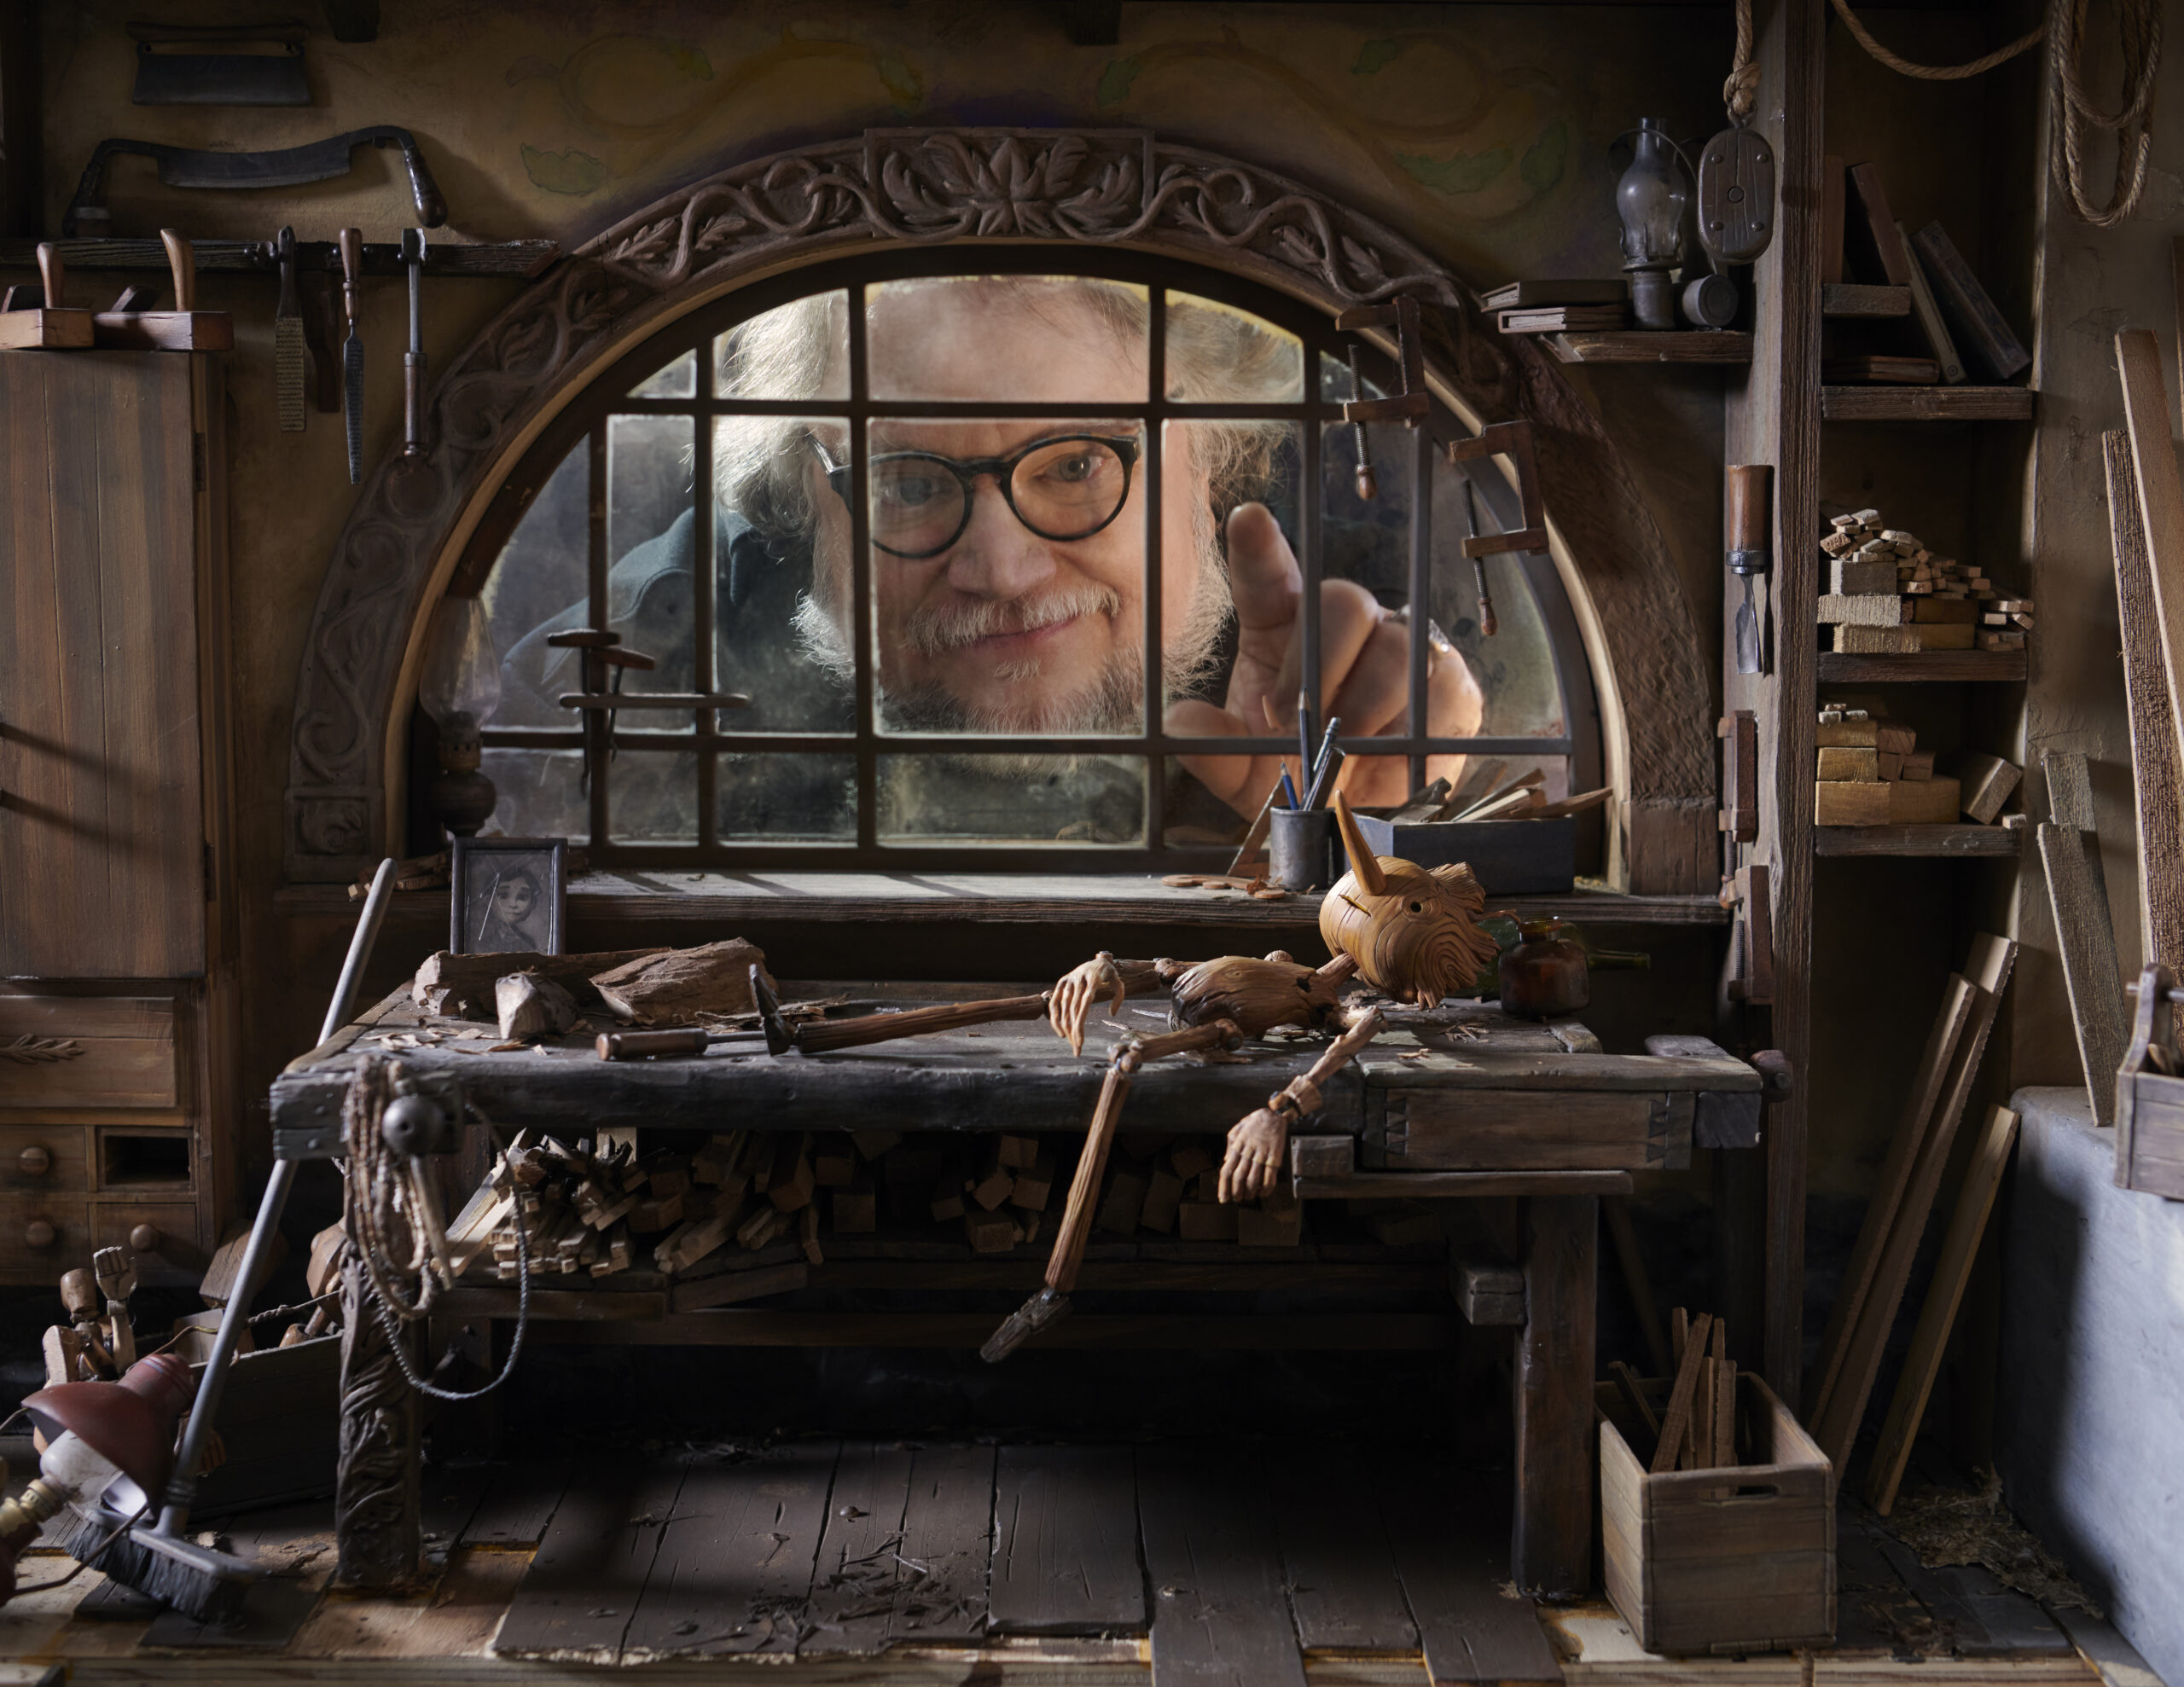 Guillermo del Toro on the set of "Pinocchio"